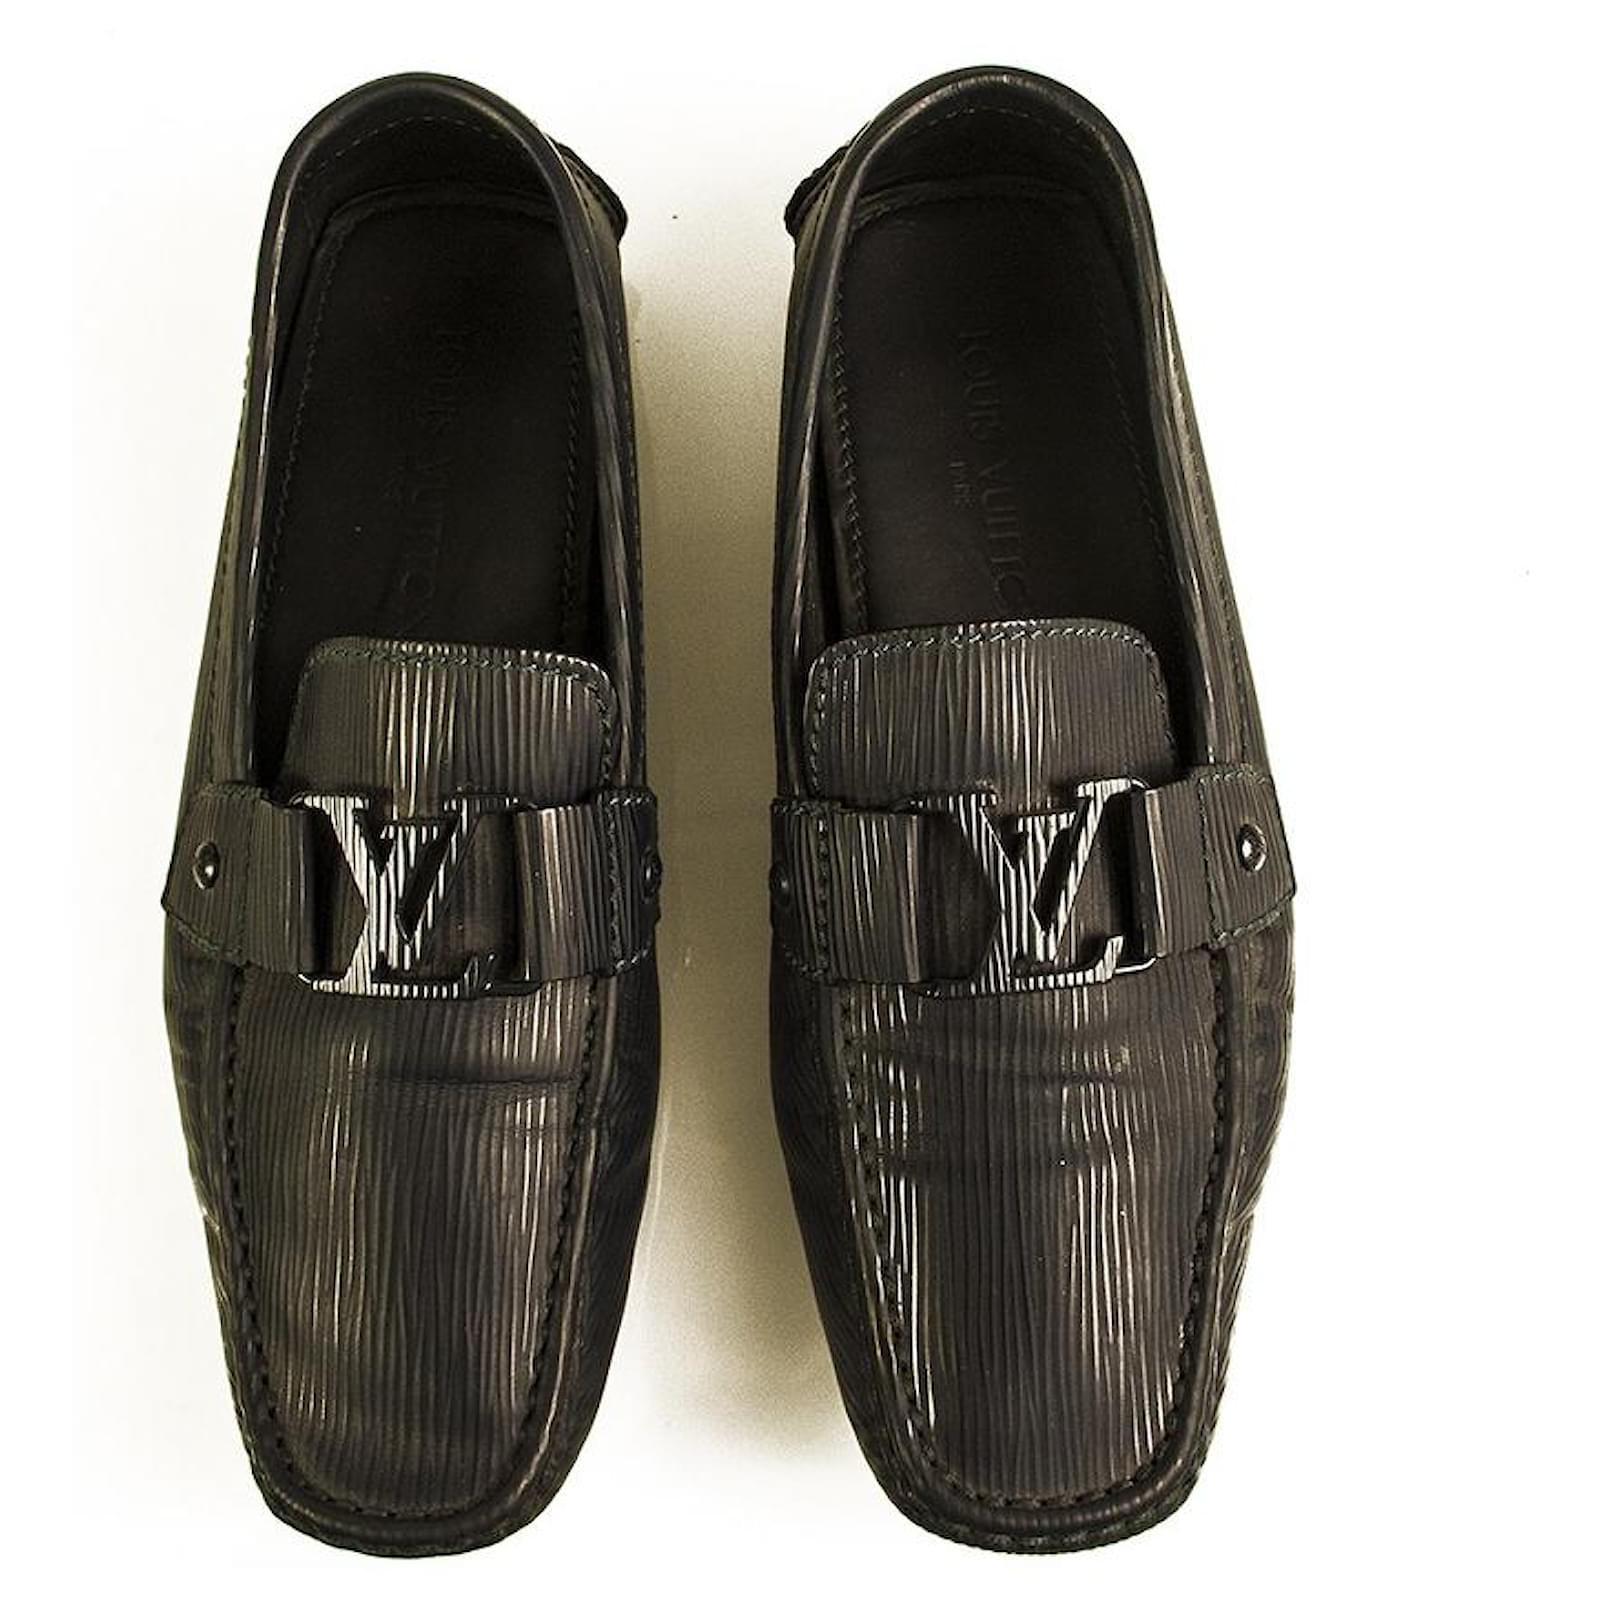 Mocassin Louis Vuitton - Chaussures de Luxe Pour Homme Couleur